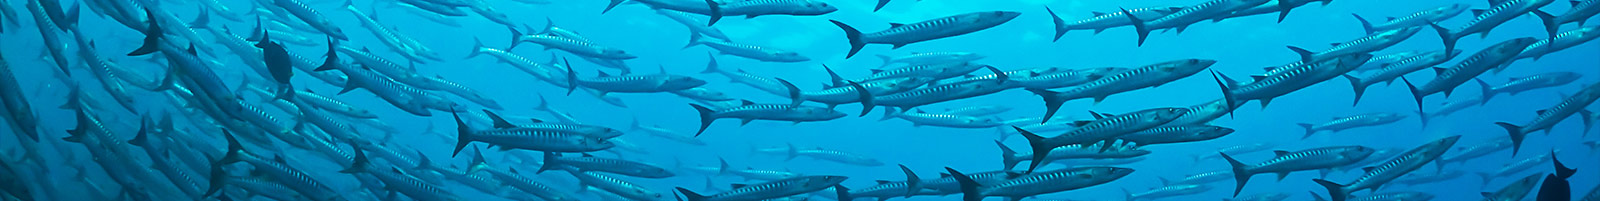 CDWS statement on shark incident in Sharm el Sheikh 